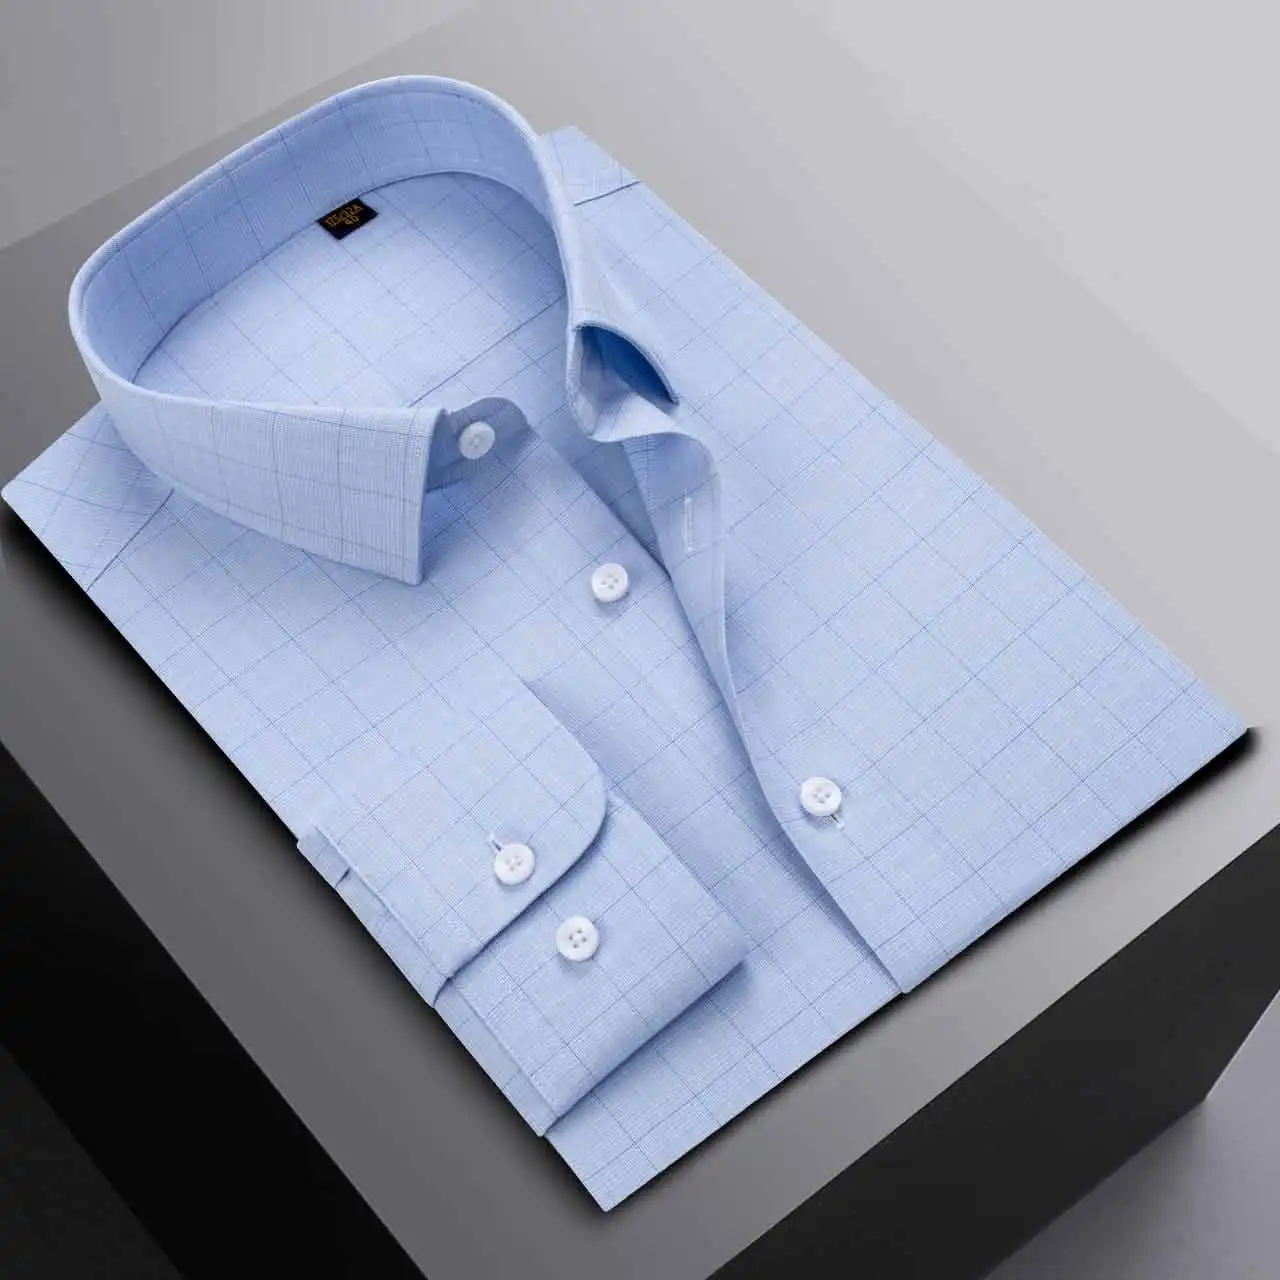 Alta calidad personalizado bordado logotipo formal a cuadros moda estampado floral algodón casual vestido de negocios camisas de manga larga de los hombres